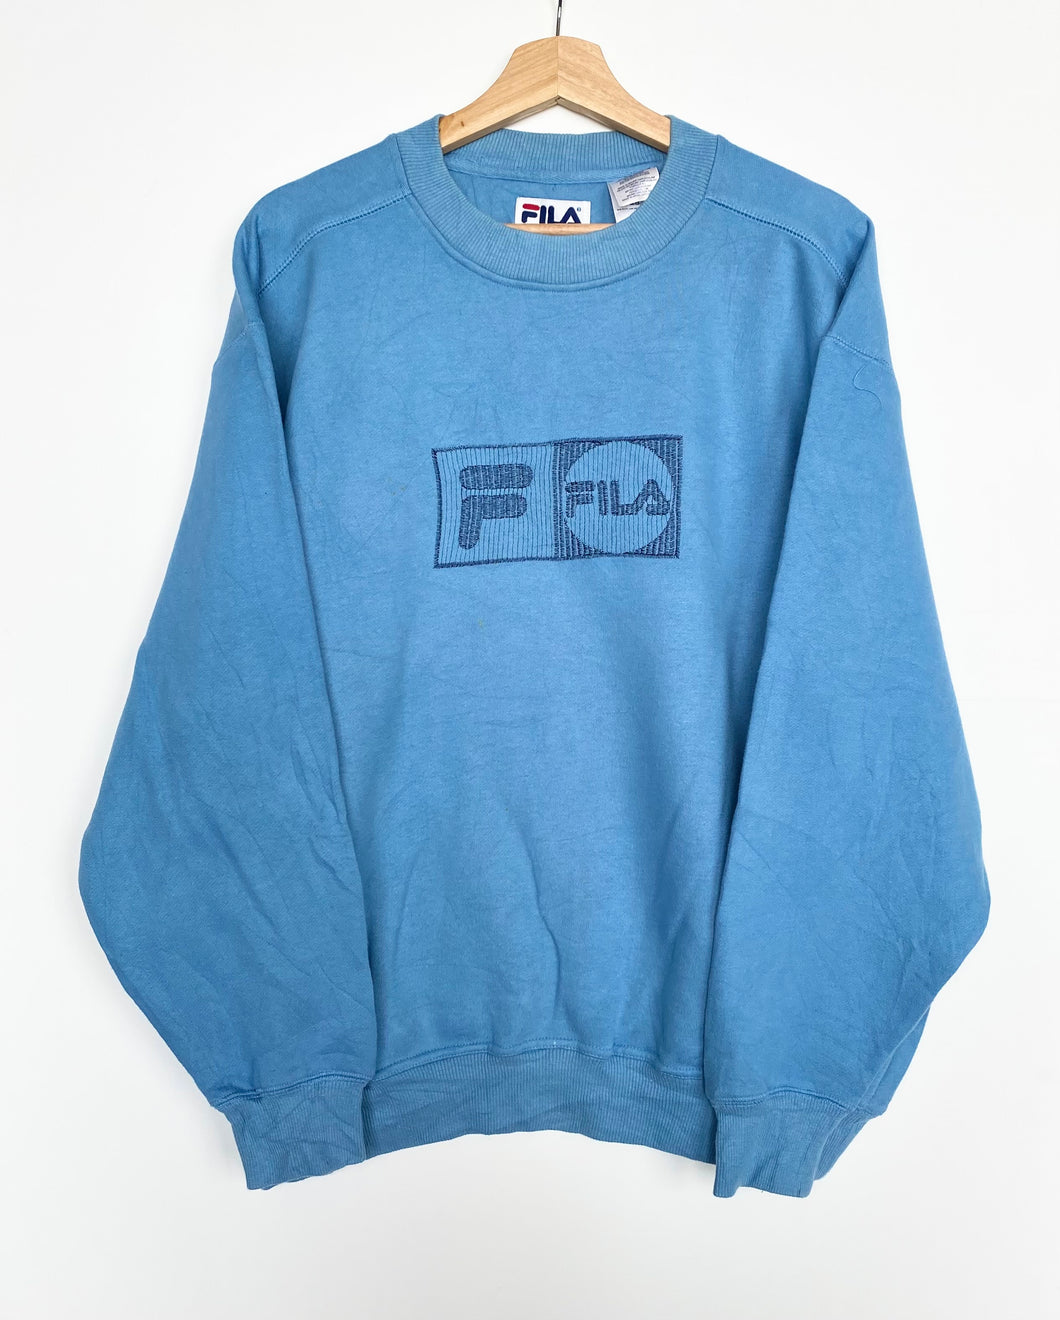 90s Fila sweatshirt (L)